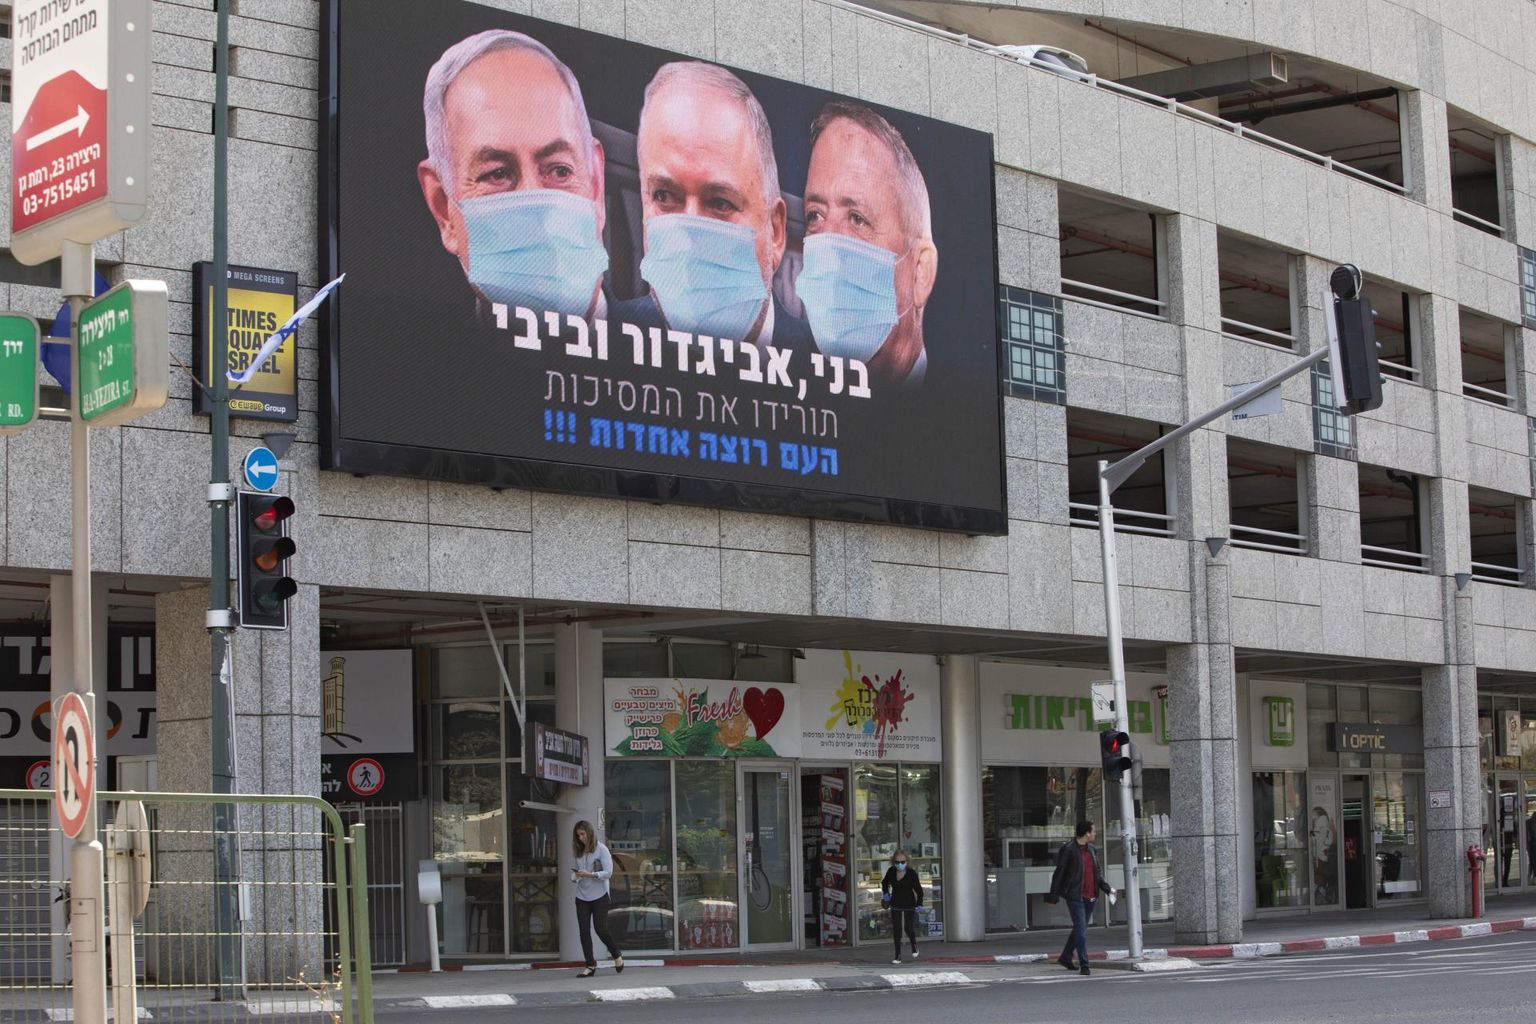 Poliitikuid survestatakse ka rohujuuretasandilt. Plakat kutsub üles peaminister Benjamin Netanyahut, endist kaitseministrit Avigdor Liebermani ja parlamendi spiikrit Benny Gantzi üksmeelele jõudma.